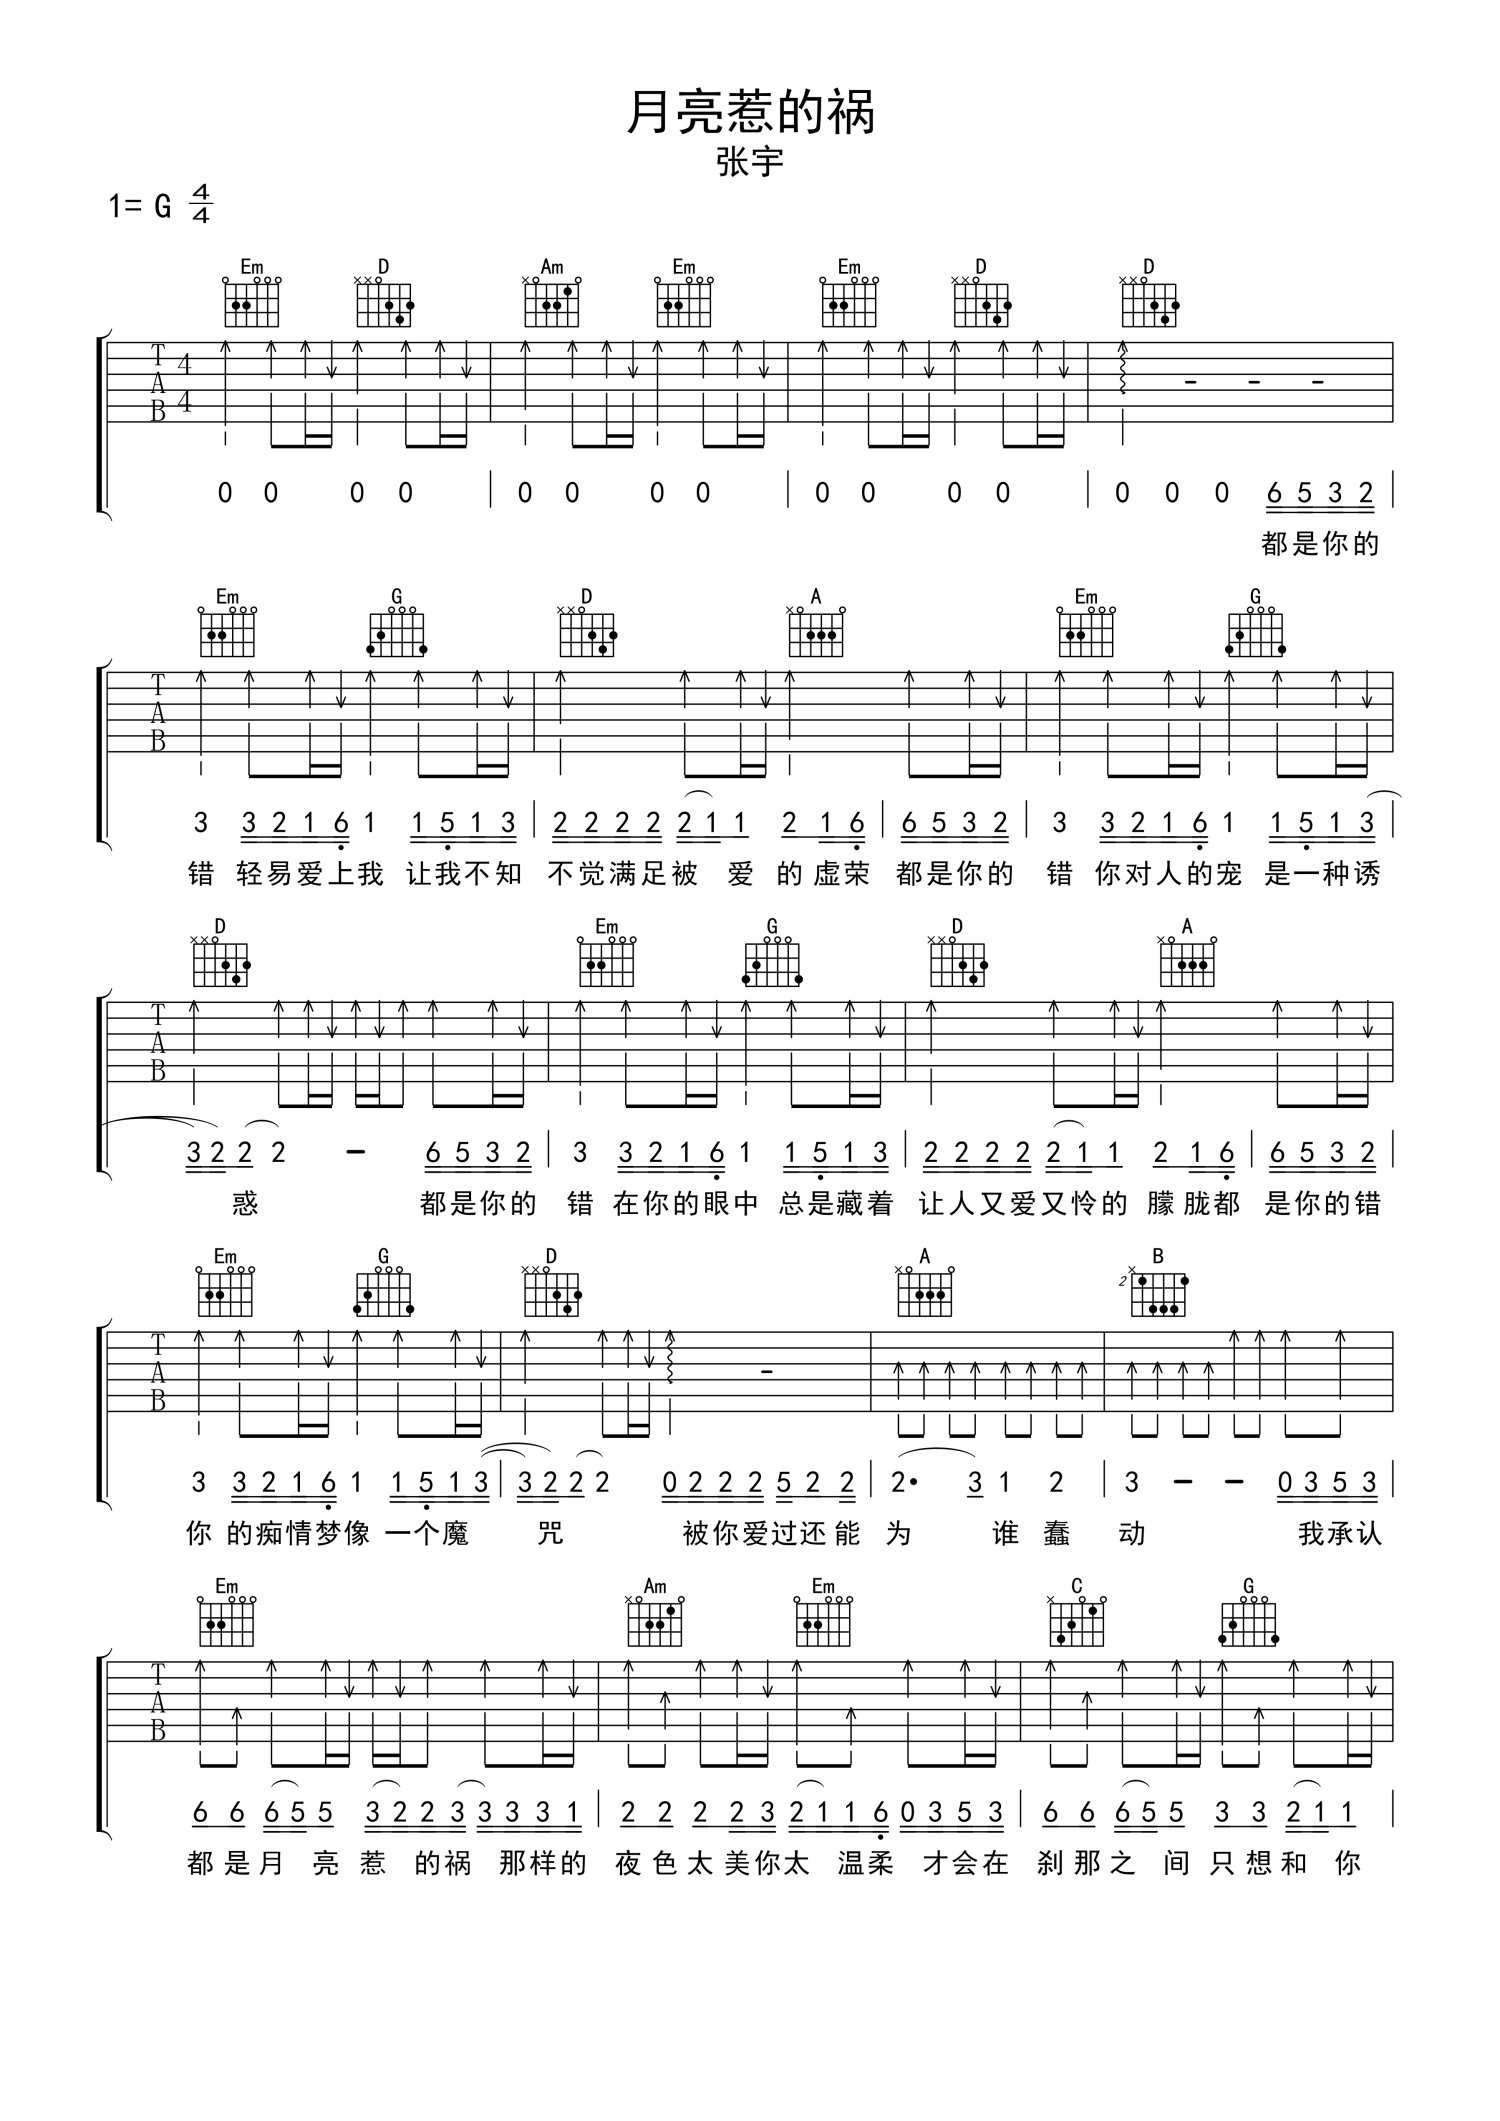 吉他乐曲谱《月亮惹的祸》张宇-吉他曲谱 - 乐器学习网